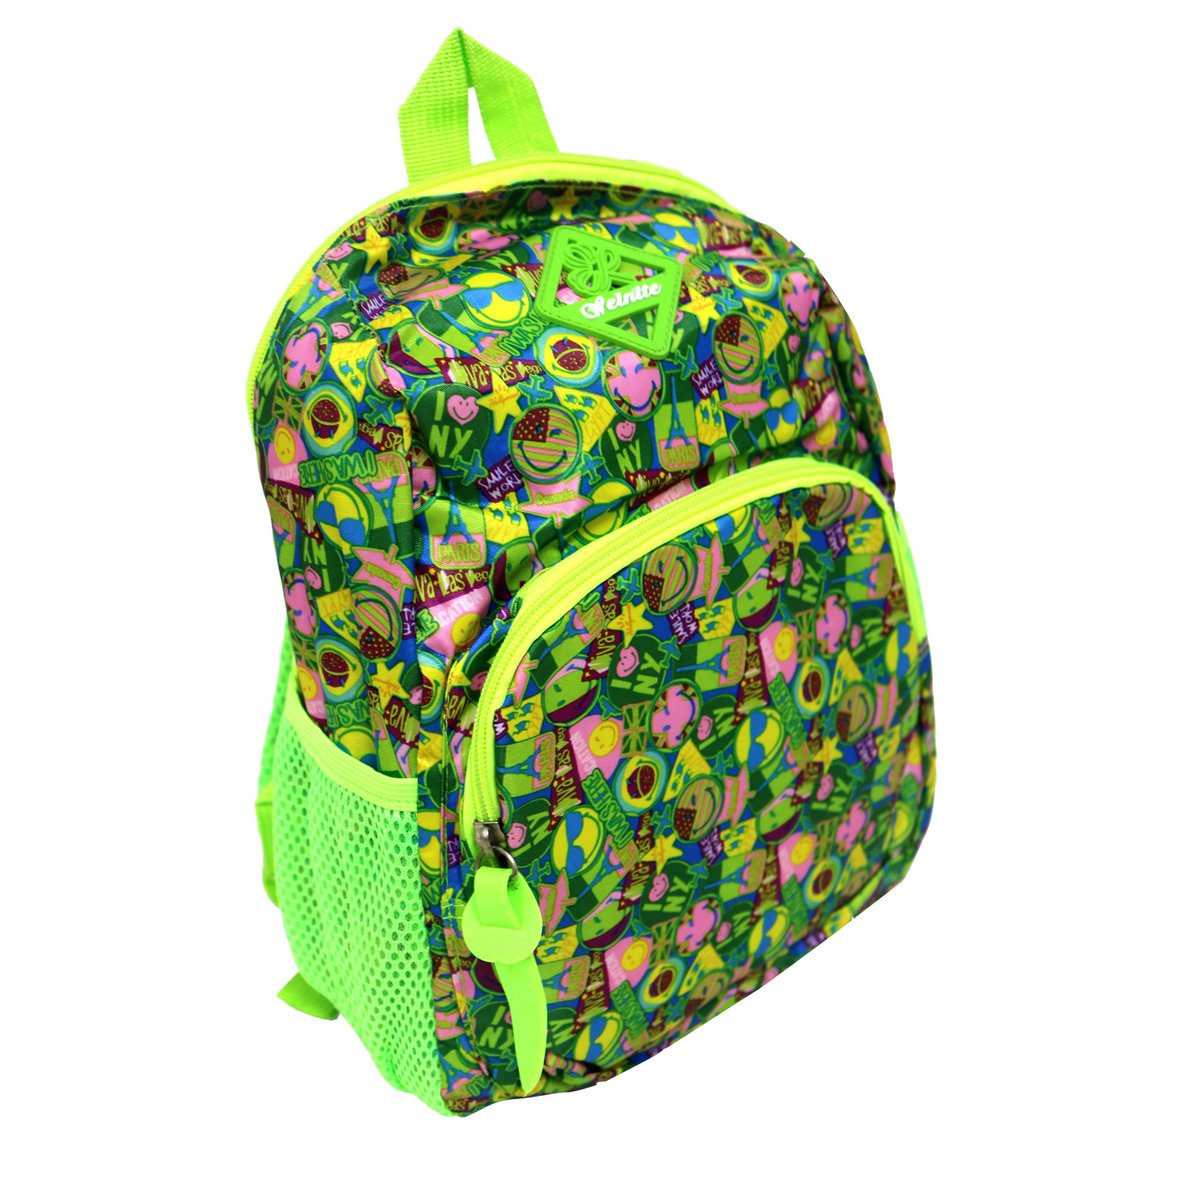 Tag Basic  School Bag 2246-3